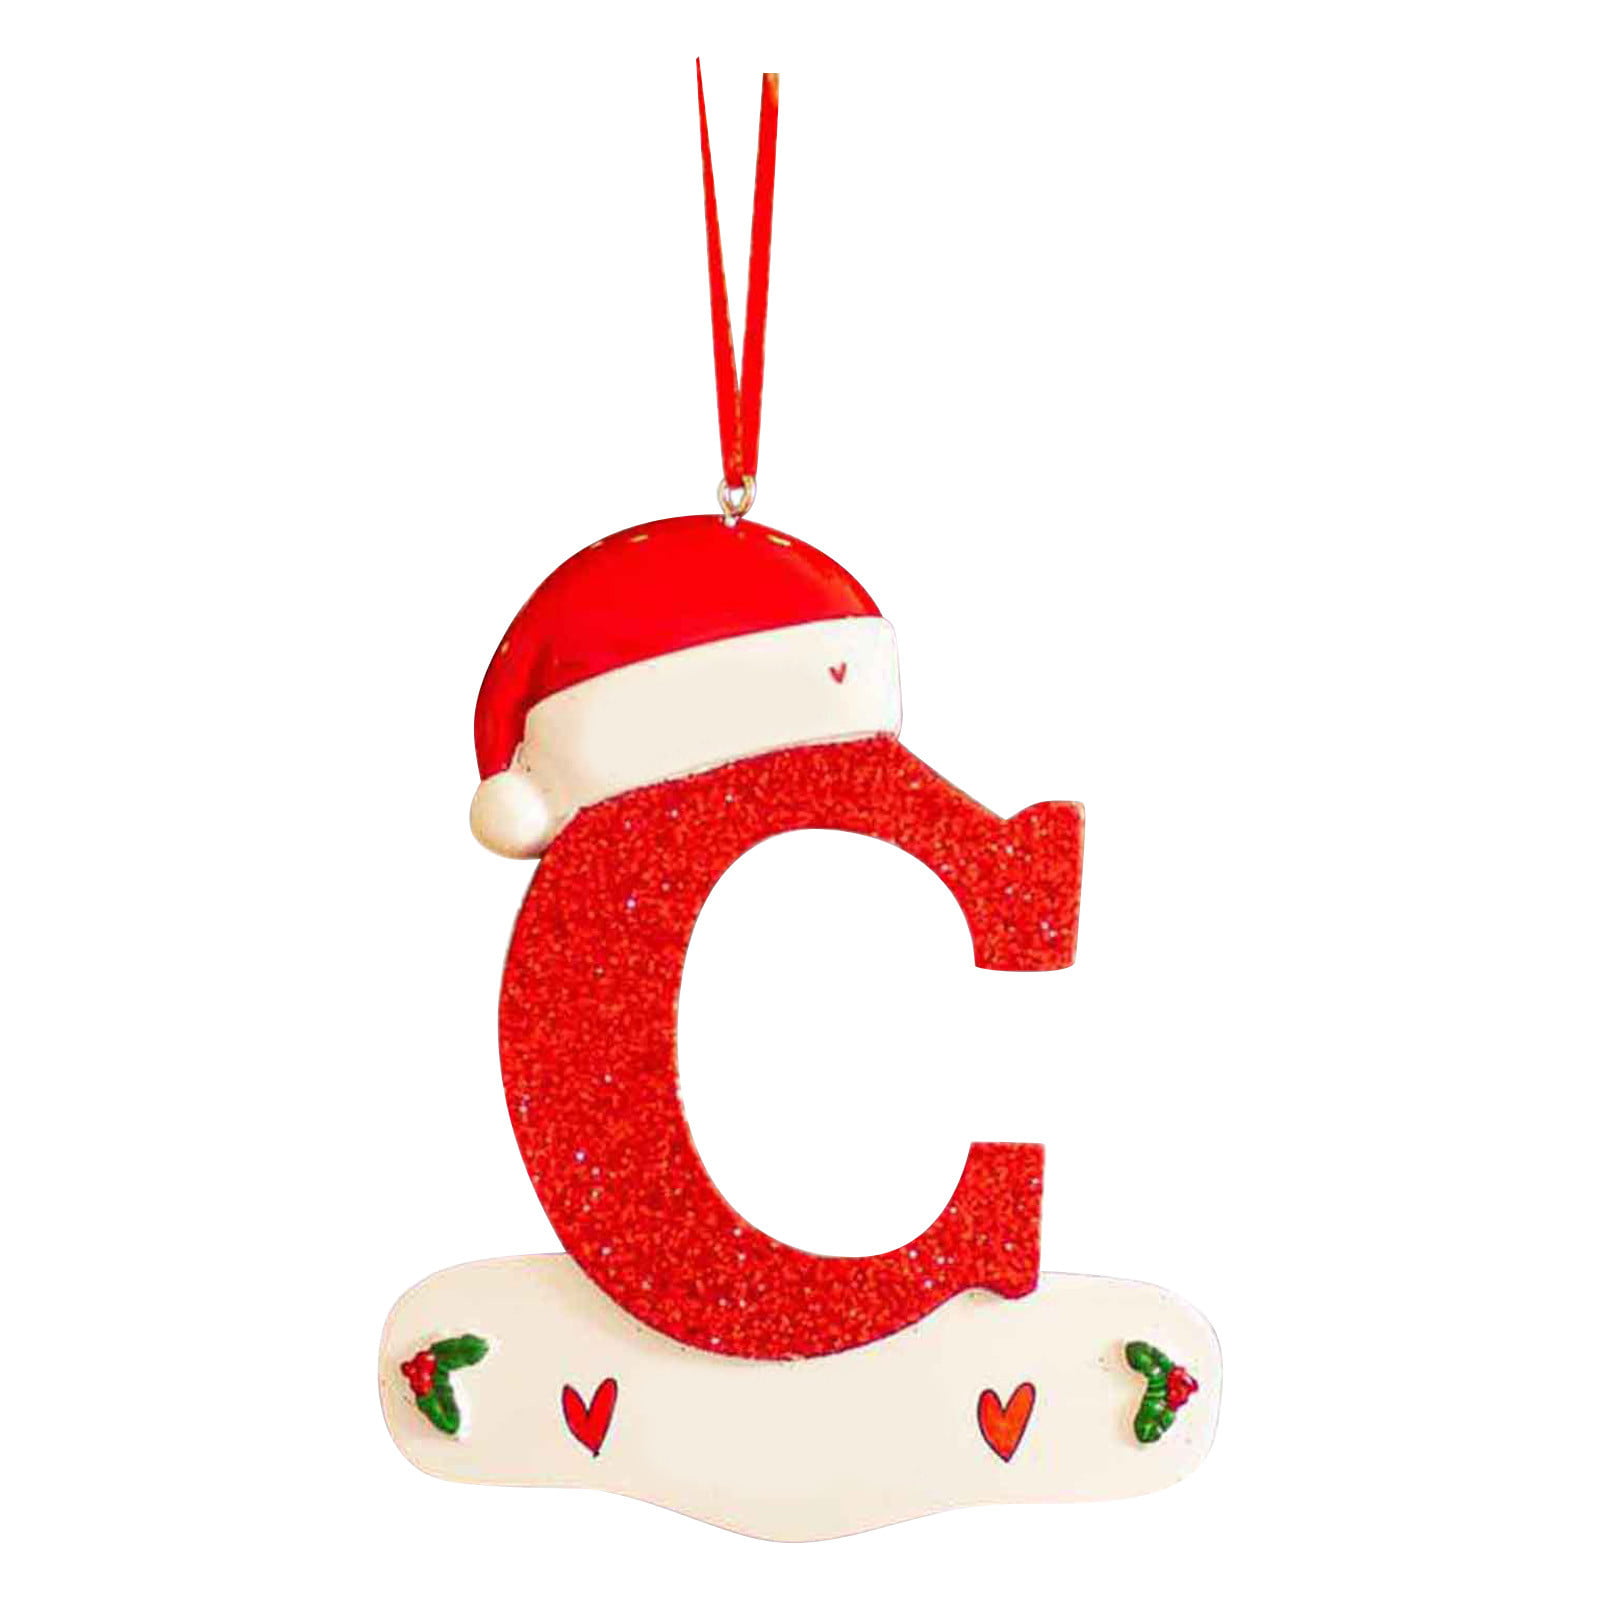 Bạn đang tìm kiếm những ý tưởng trang trí cho mùa Giáng sinh sắp tới? Đèn nhỏ Red Hat chữ cái treo DIY sẽ là một lựa chọn đầy phong cách và dễ thực hiện. Xem hình ảnh liên quan để có thêm ý tưởng và trải nghiệm một mùa lễ hội mang phong cách của riêng bạn nhé.